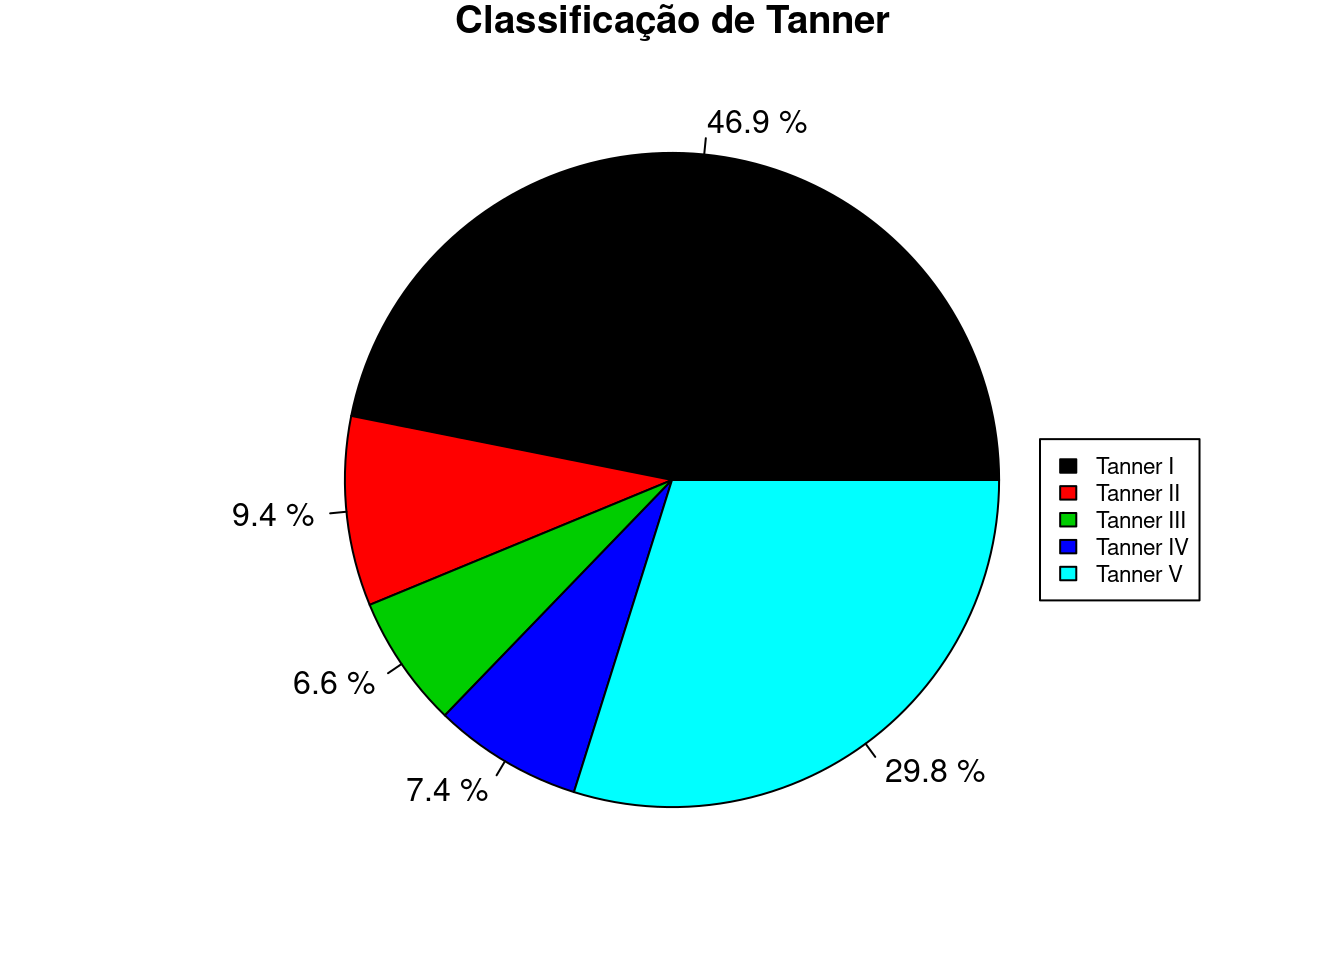 Diagrama de setores das categorias de Tanner, com os percentuais de cada categoria.